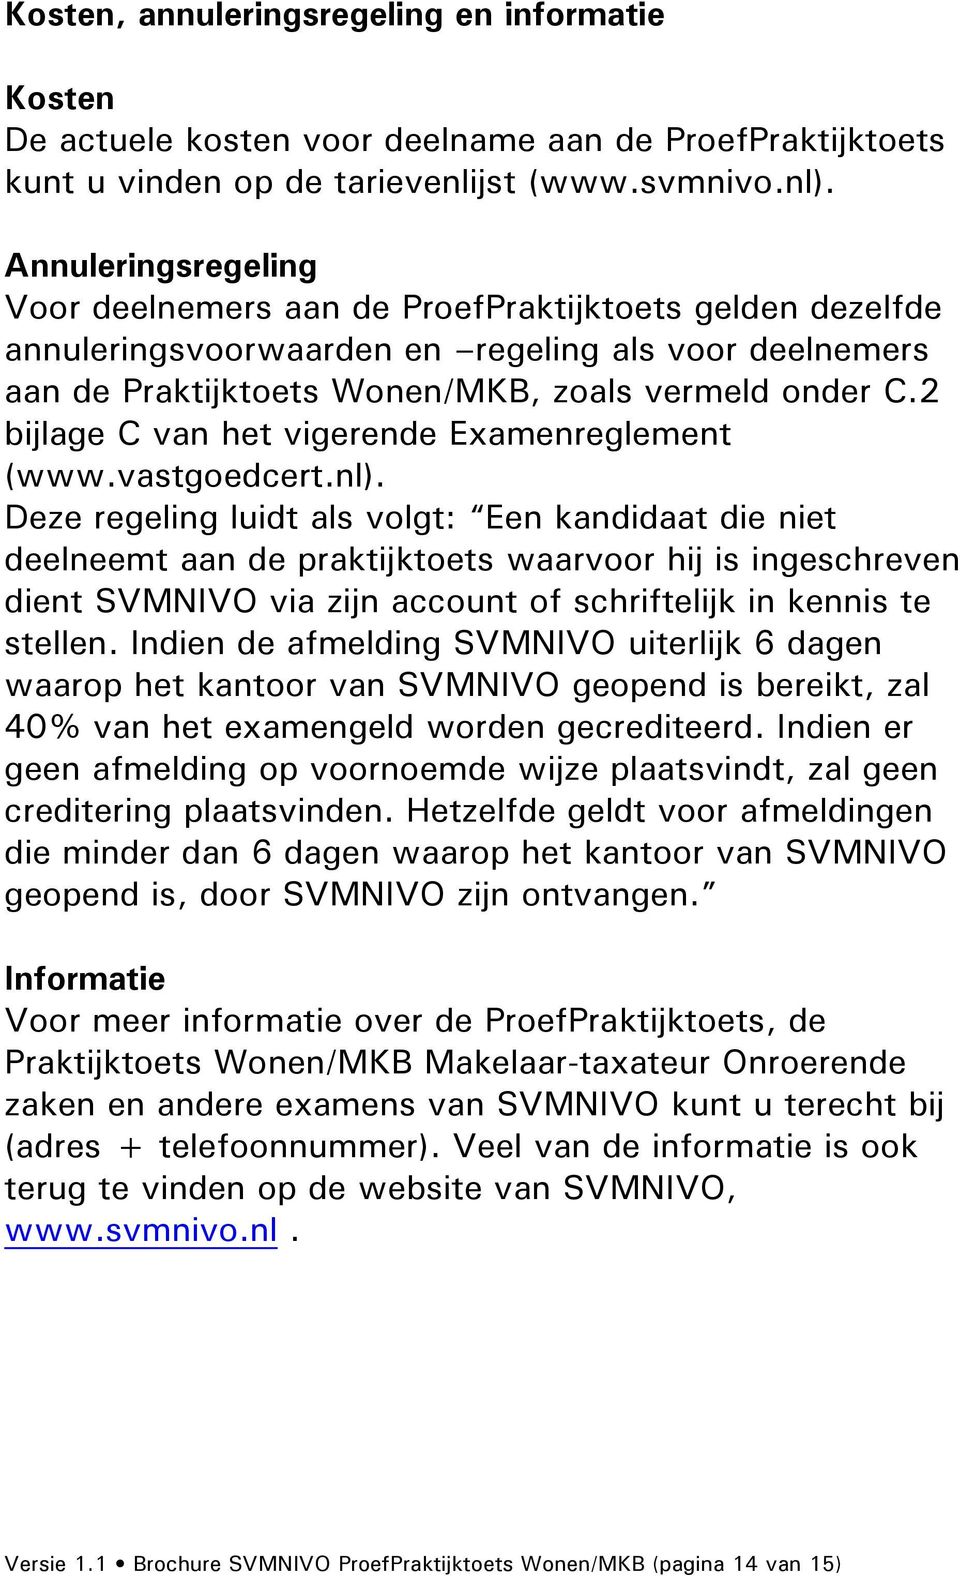 2 bijlage C van het vigerende Examenreglement (www.vastgoedcert.nl).